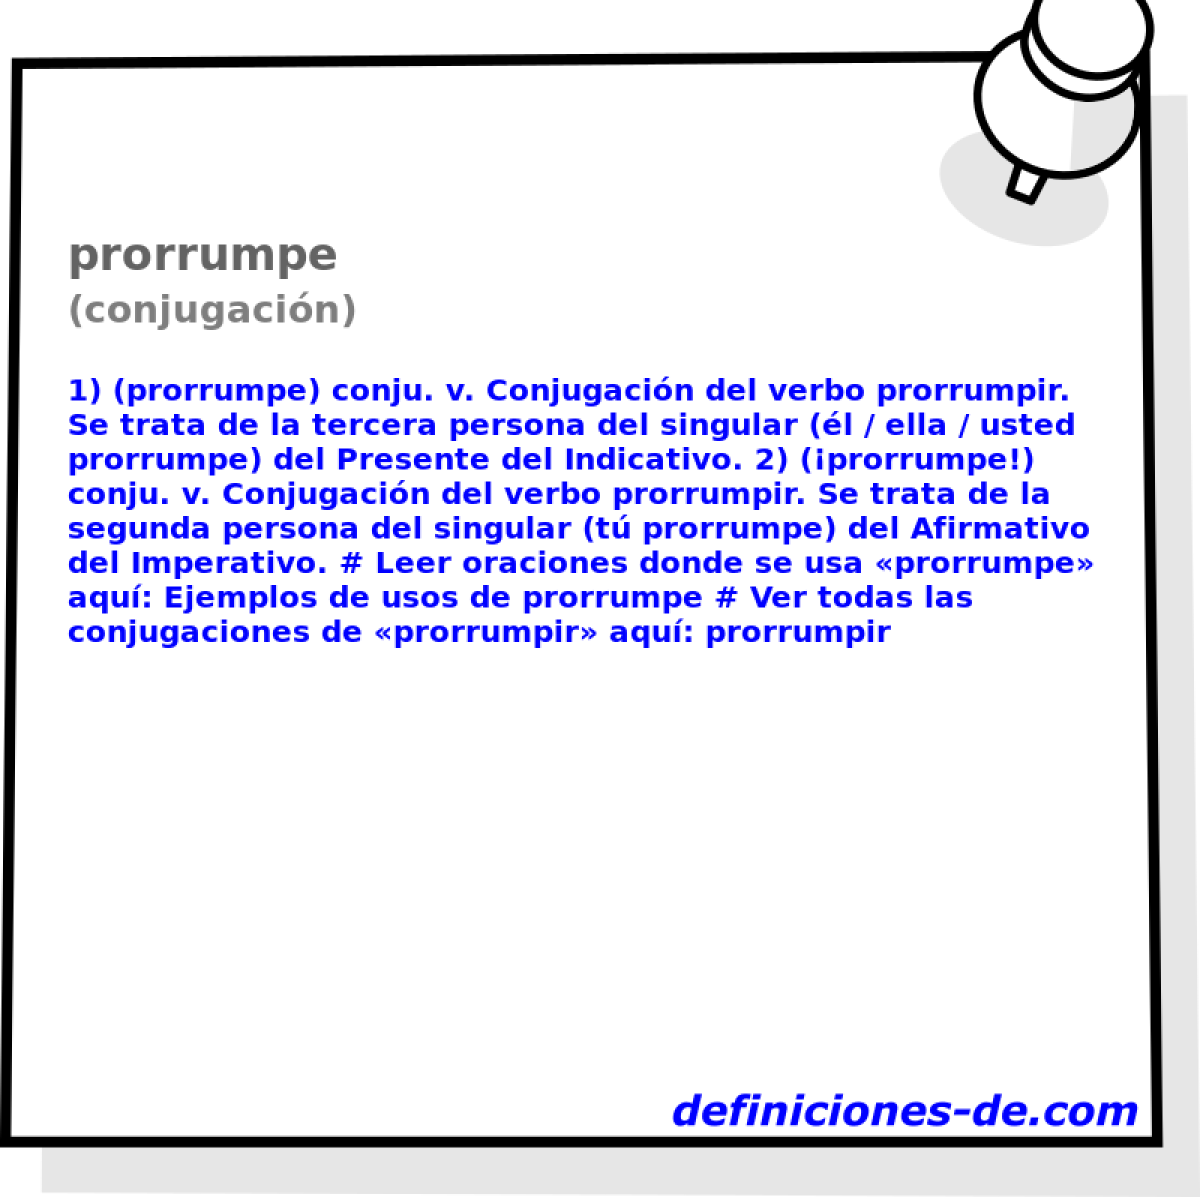 prorrumpe (conjugacin)